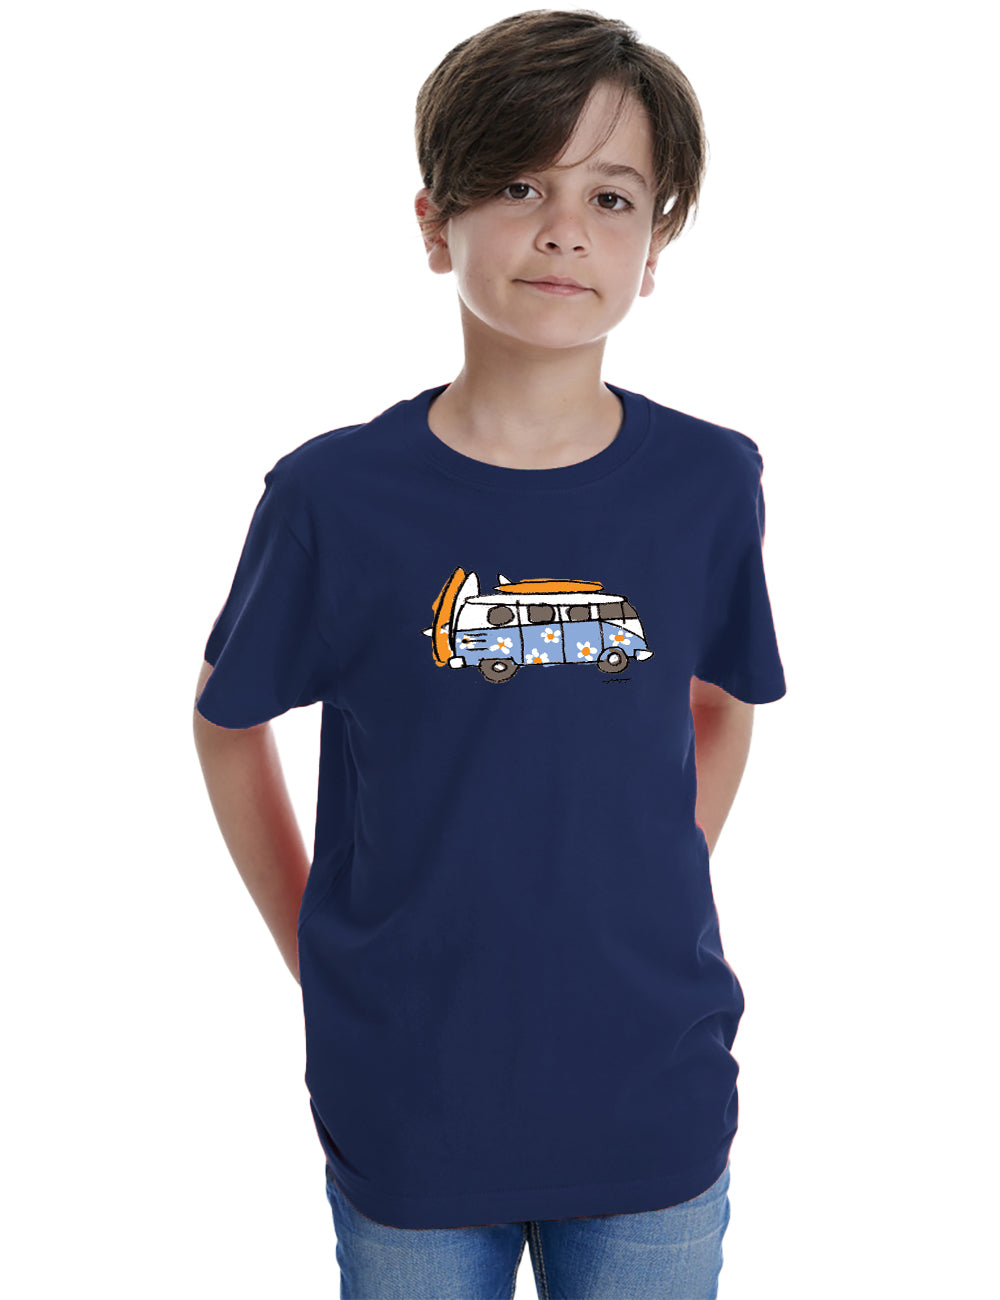 Furgo Surf Kids T-Shirt